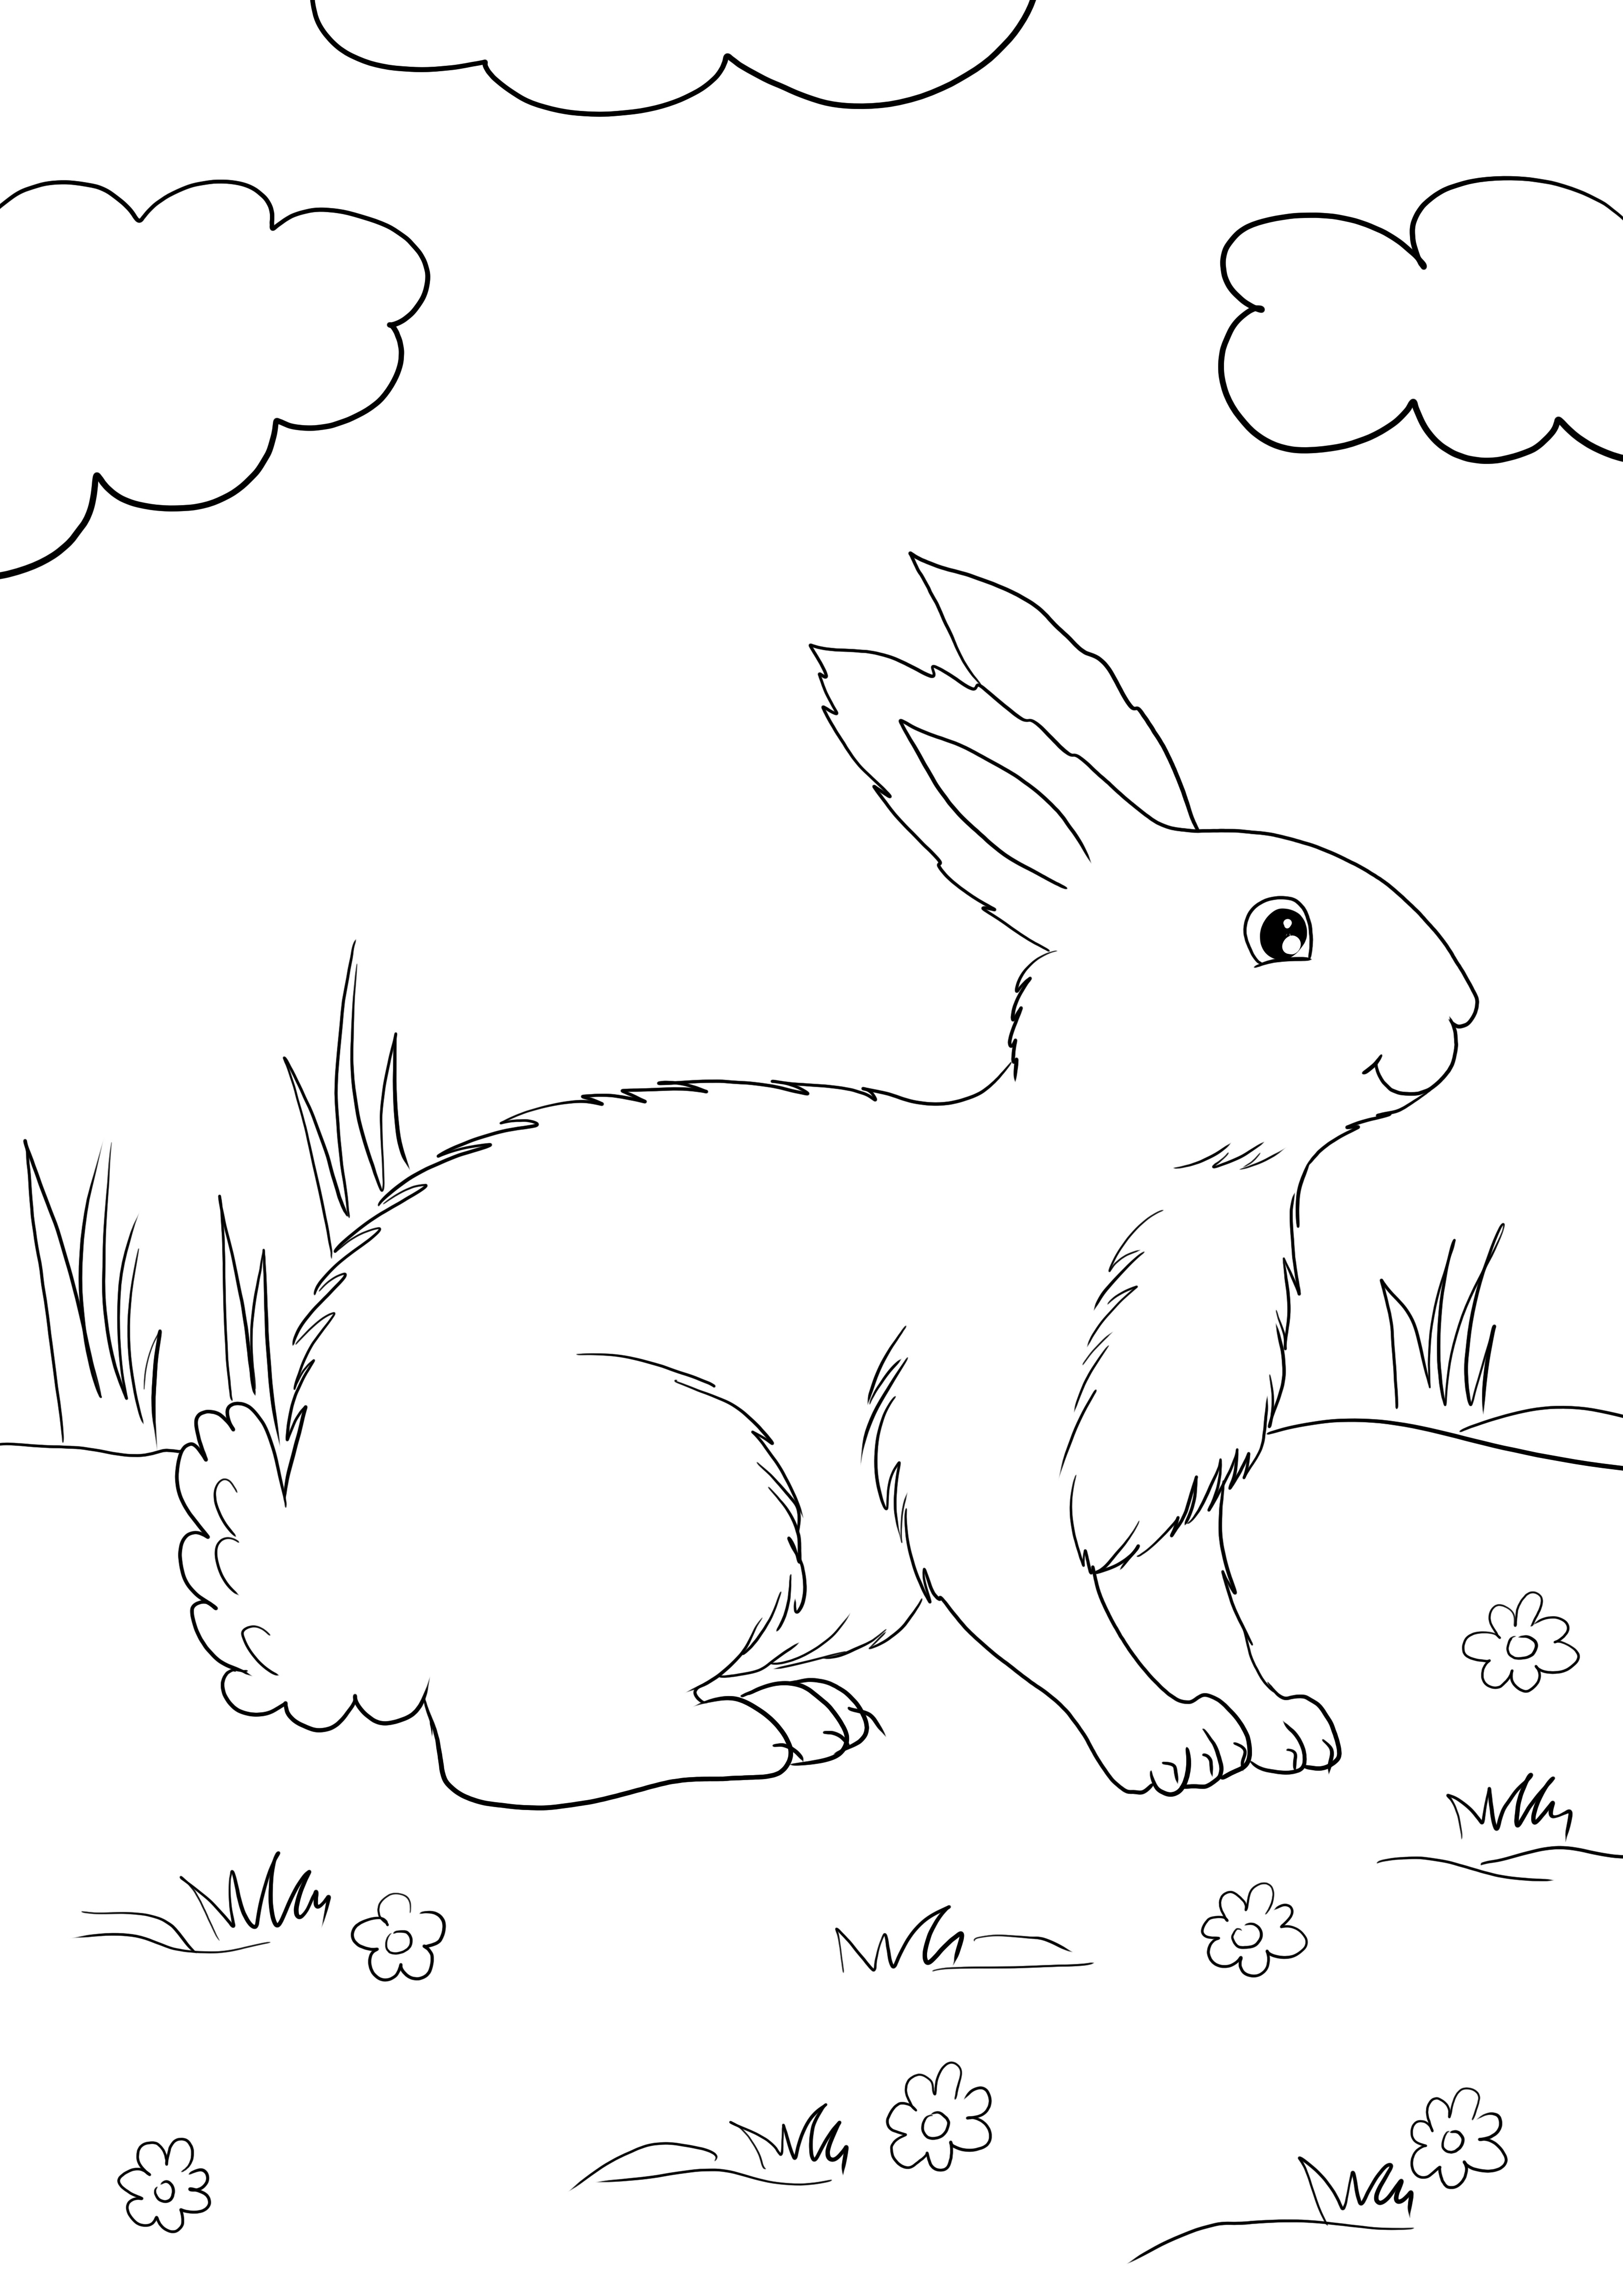 Süßes weißes Kaninchen-Werbegeschenk, einfach auszudrucken und auszumalen und etwas über Kaninchen zu lernen